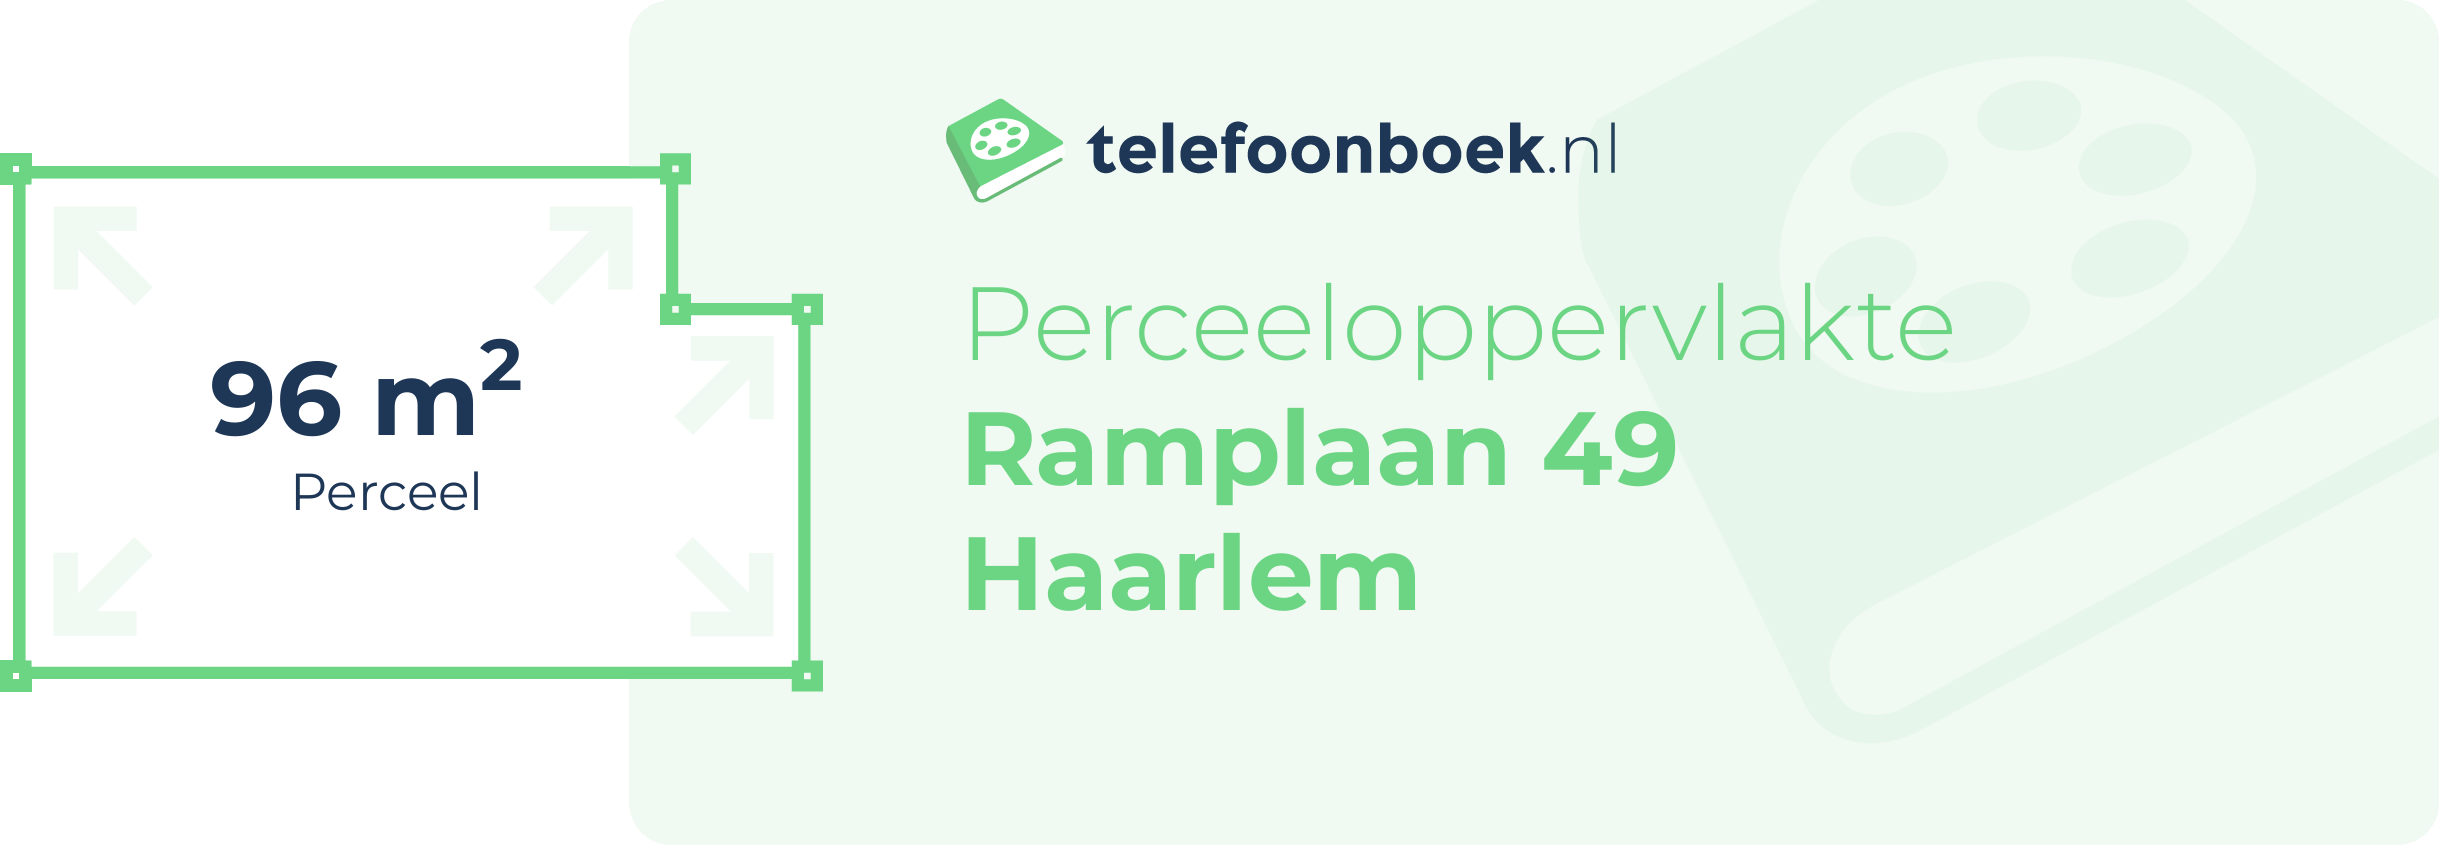 Perceeloppervlakte Ramplaan 49 Haarlem